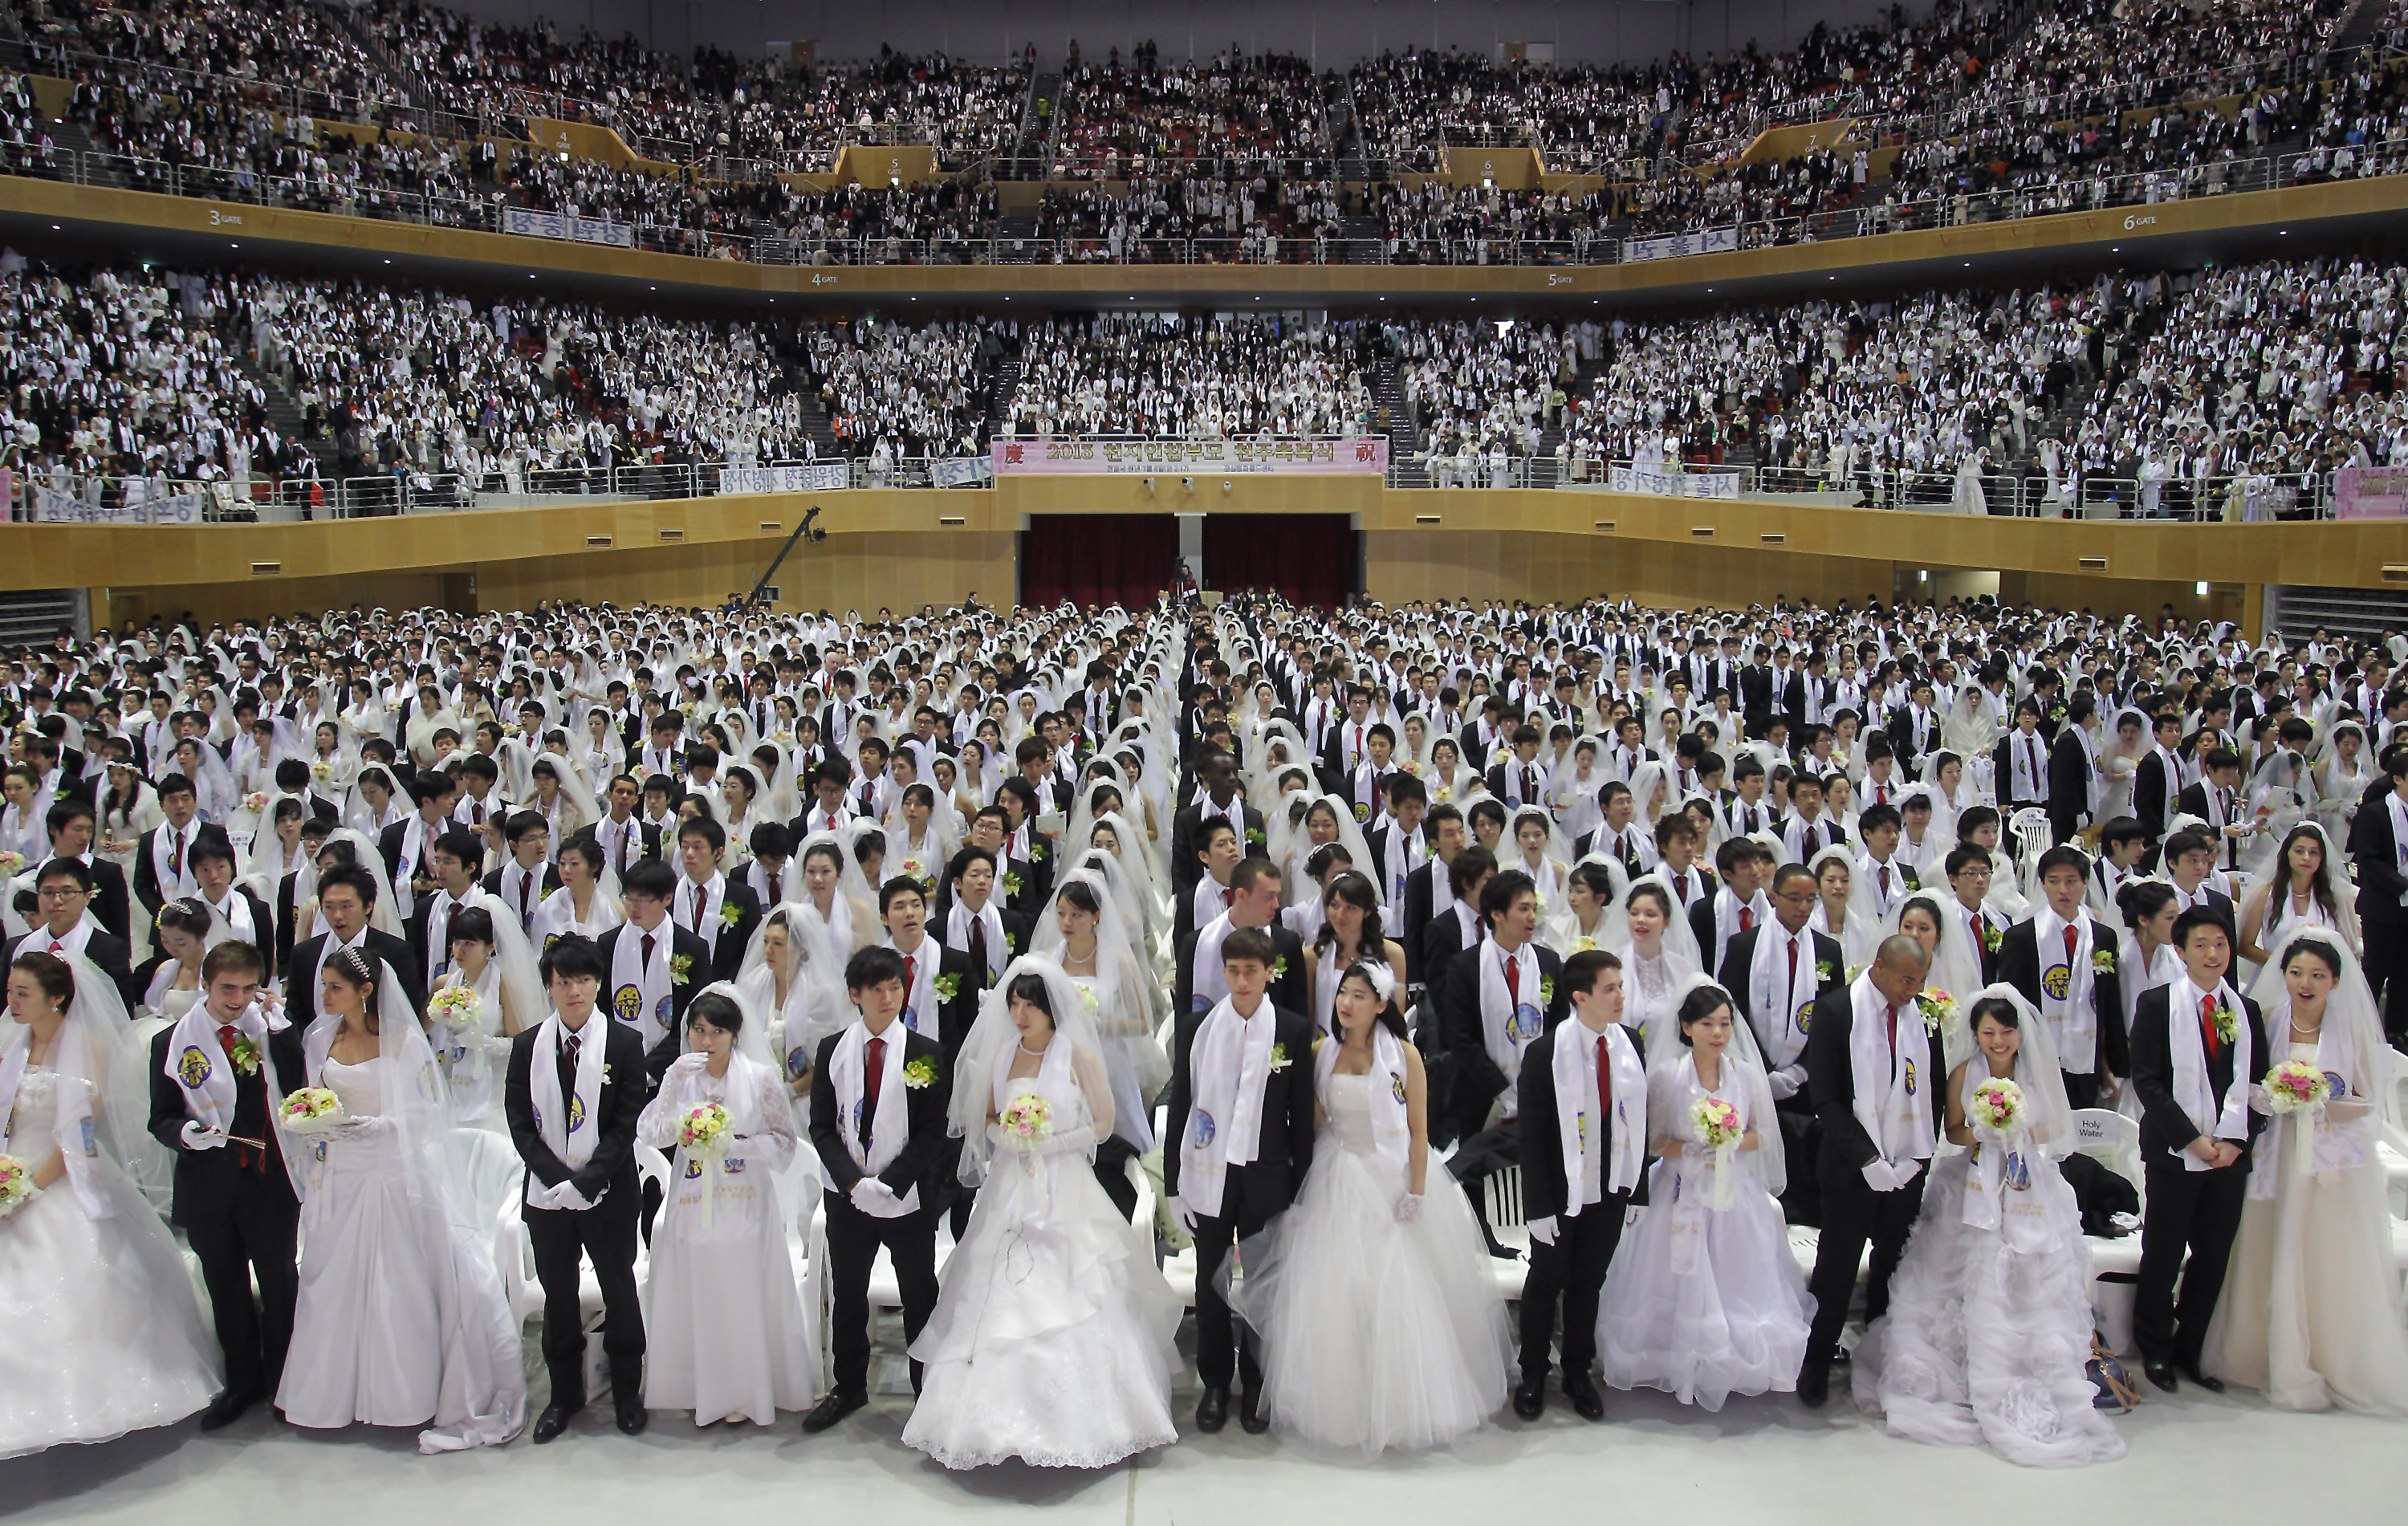 Муна сколько лет. Церковь объединения Муна. Массовая свадьба. Массовое бракосочетание. Толпа людей на свадьбе.